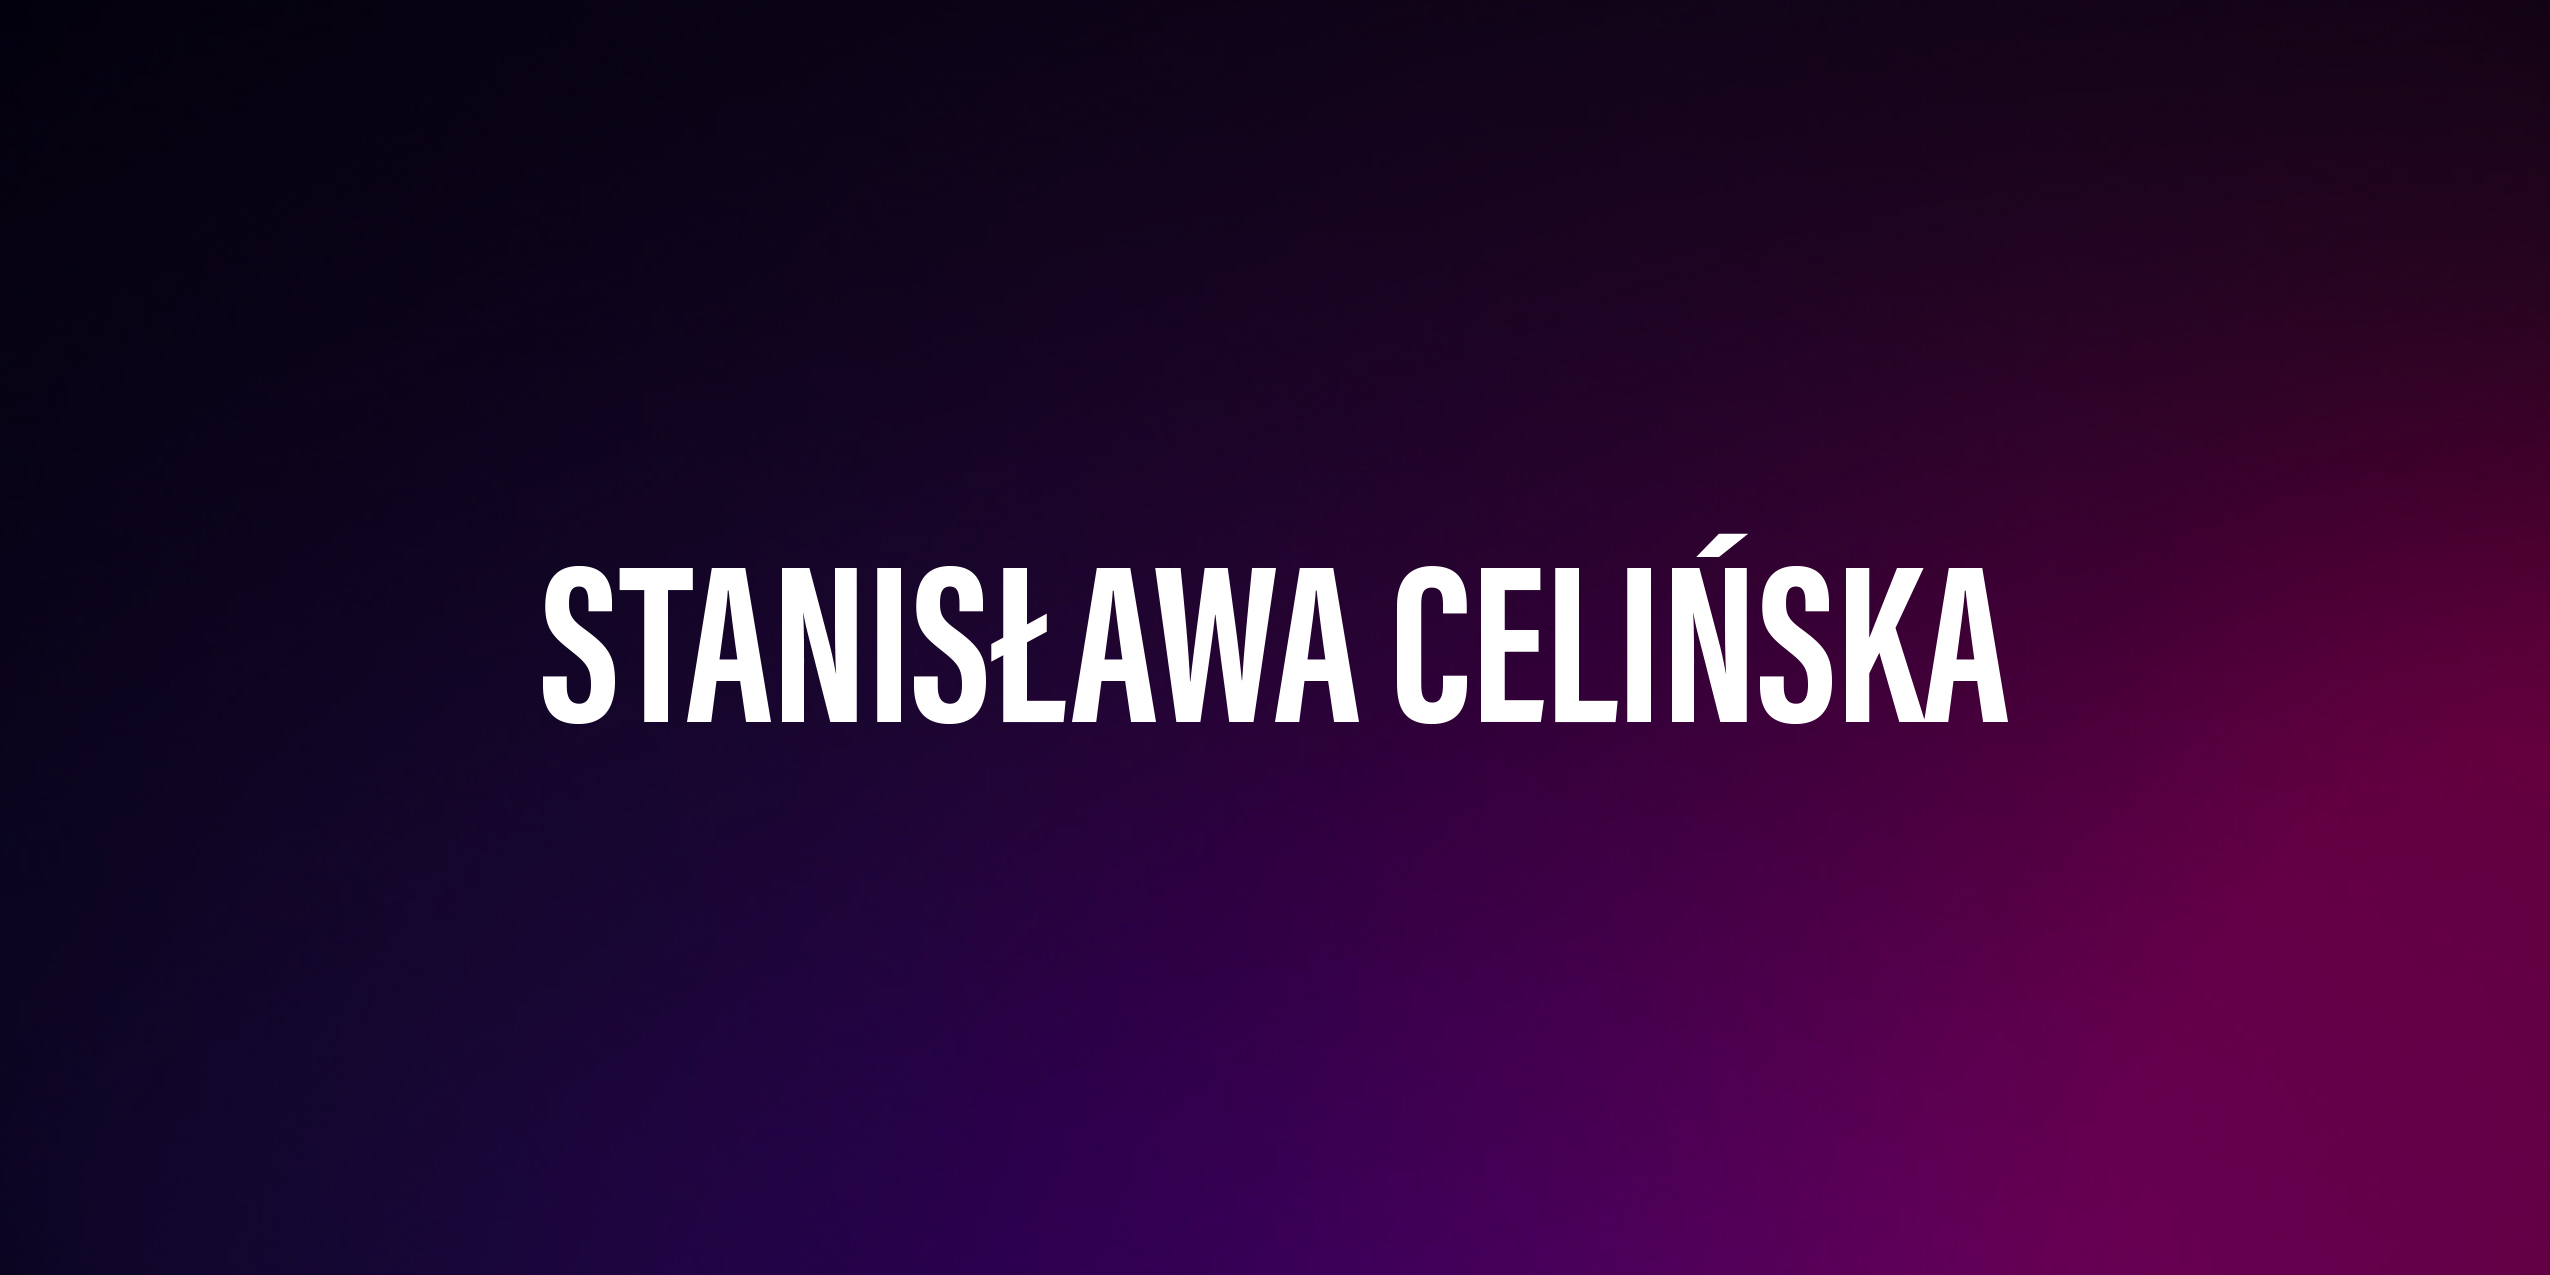 Stanisława Celińska – życiorys i filmografia